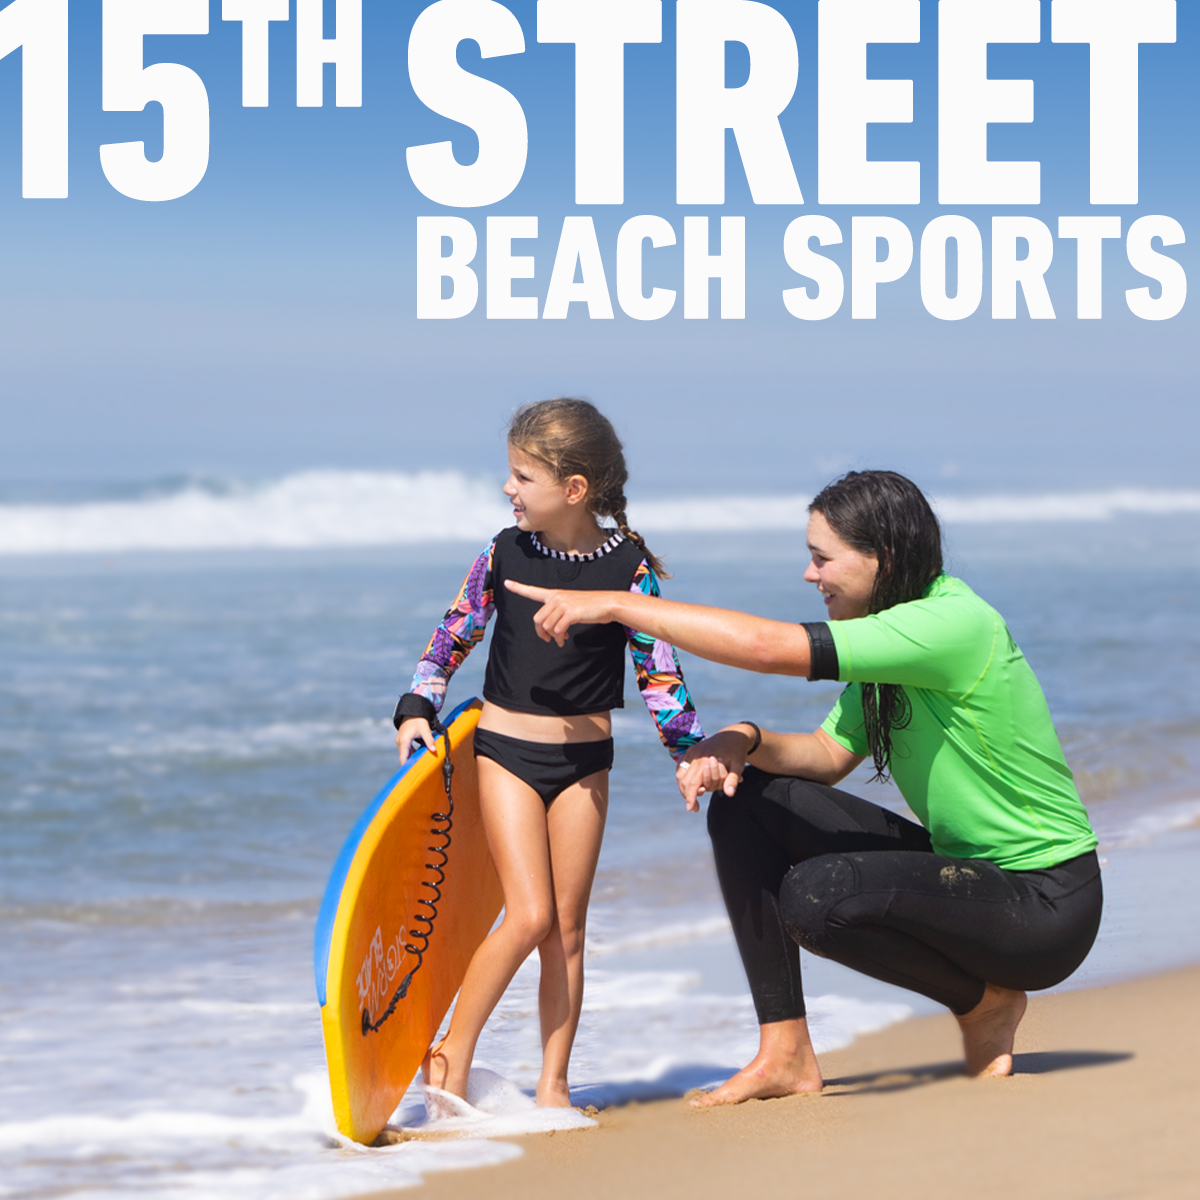 15th Street Beach Sports